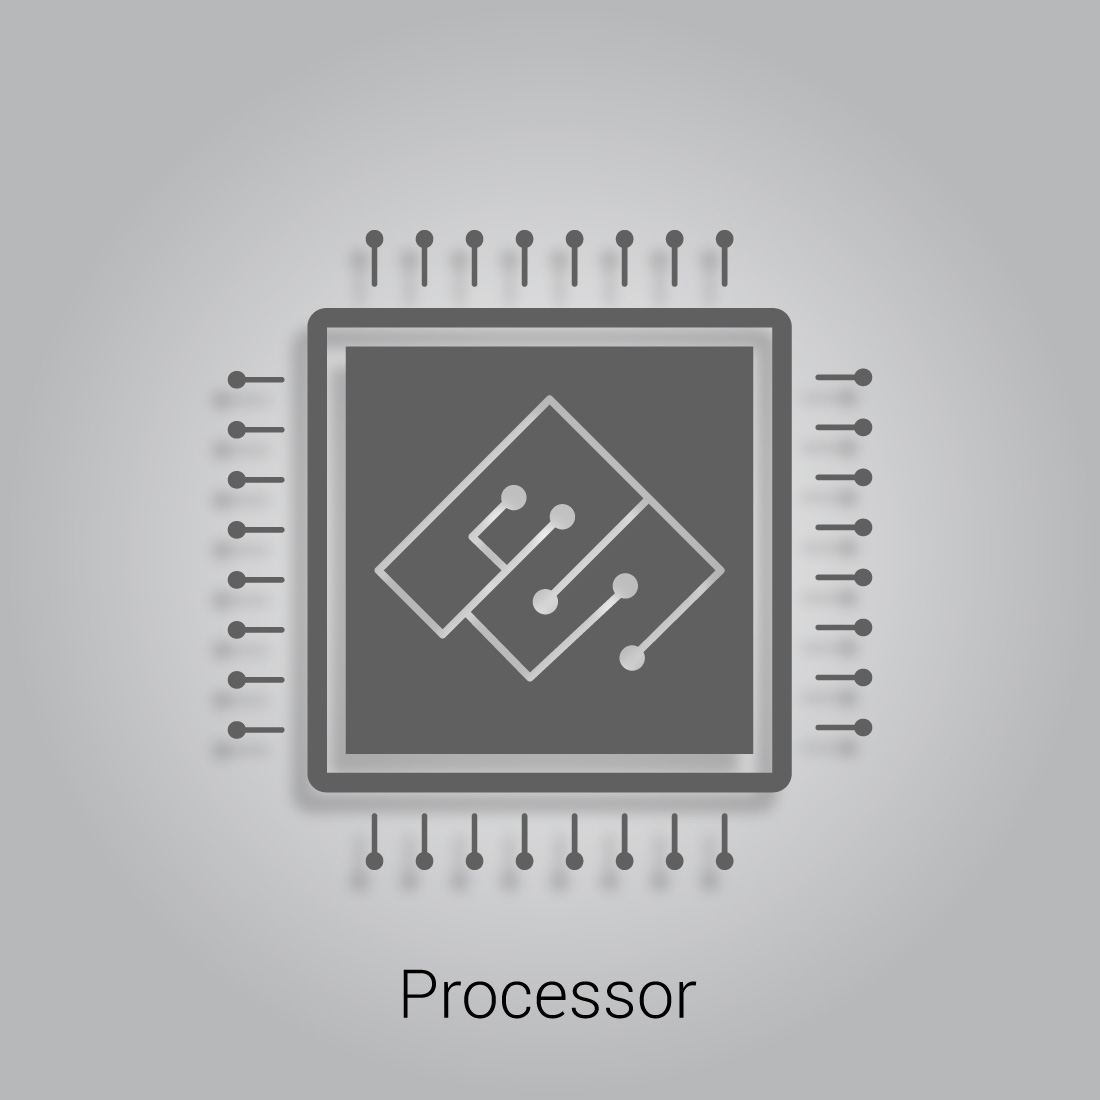 Processor logo design preview image.